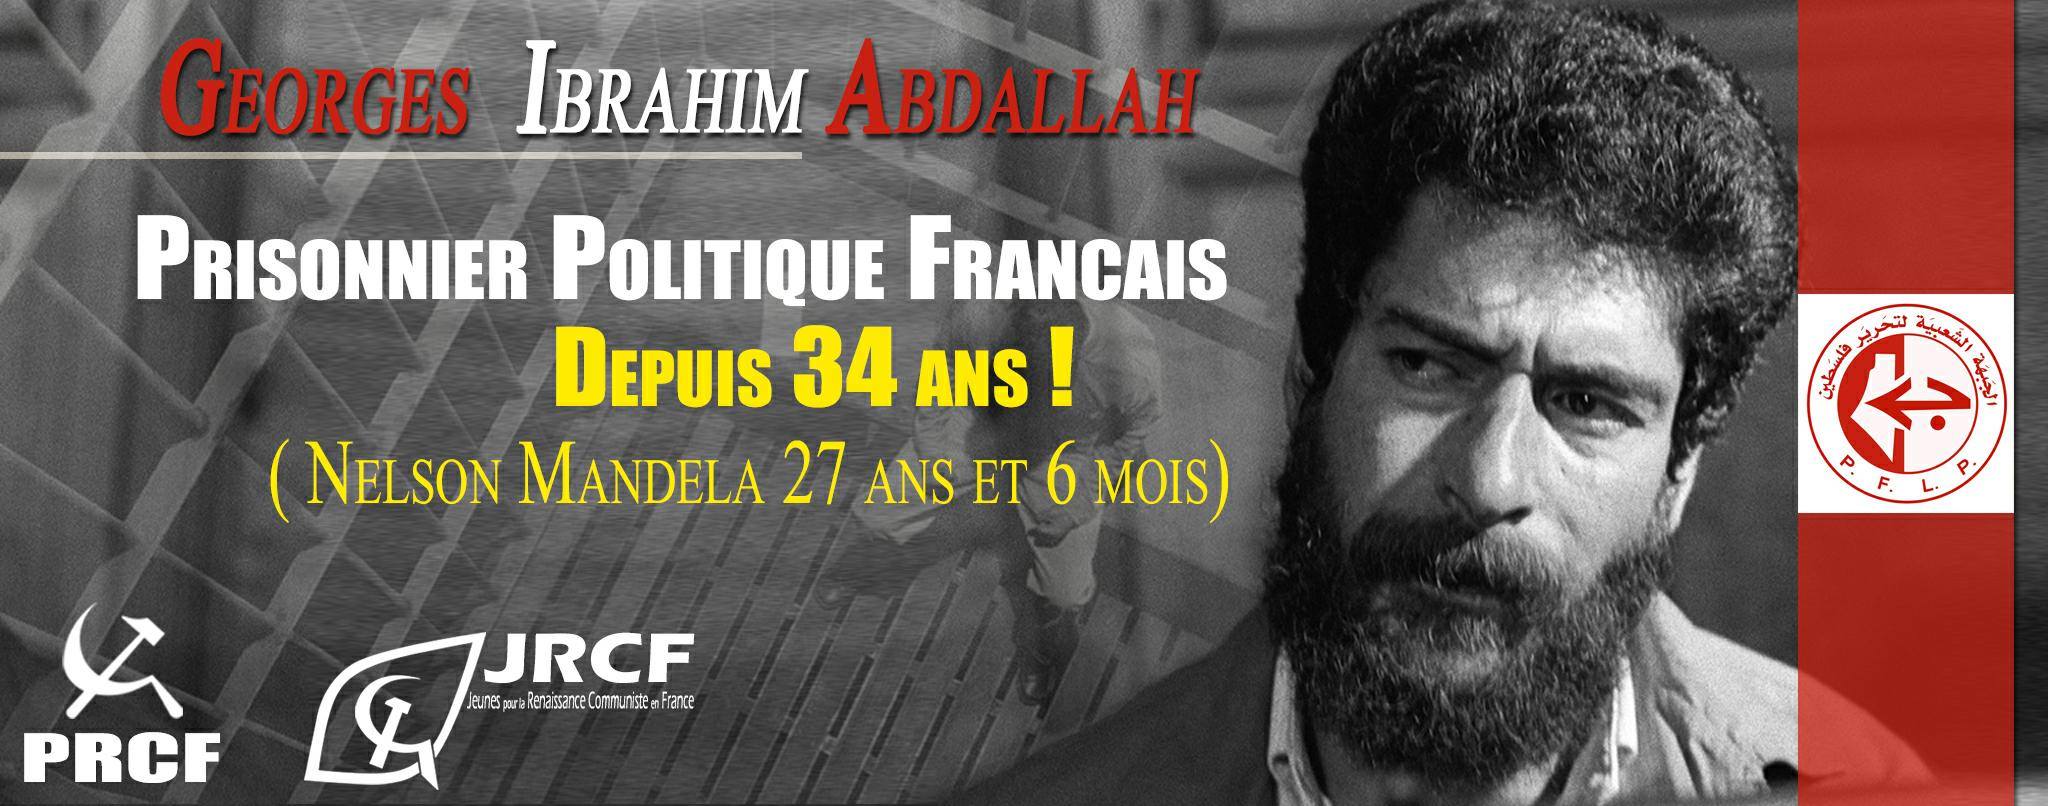 Liberté pour Georges Ibrahim Abdallah, prisonnier politique français, manifestation à Lanmezan